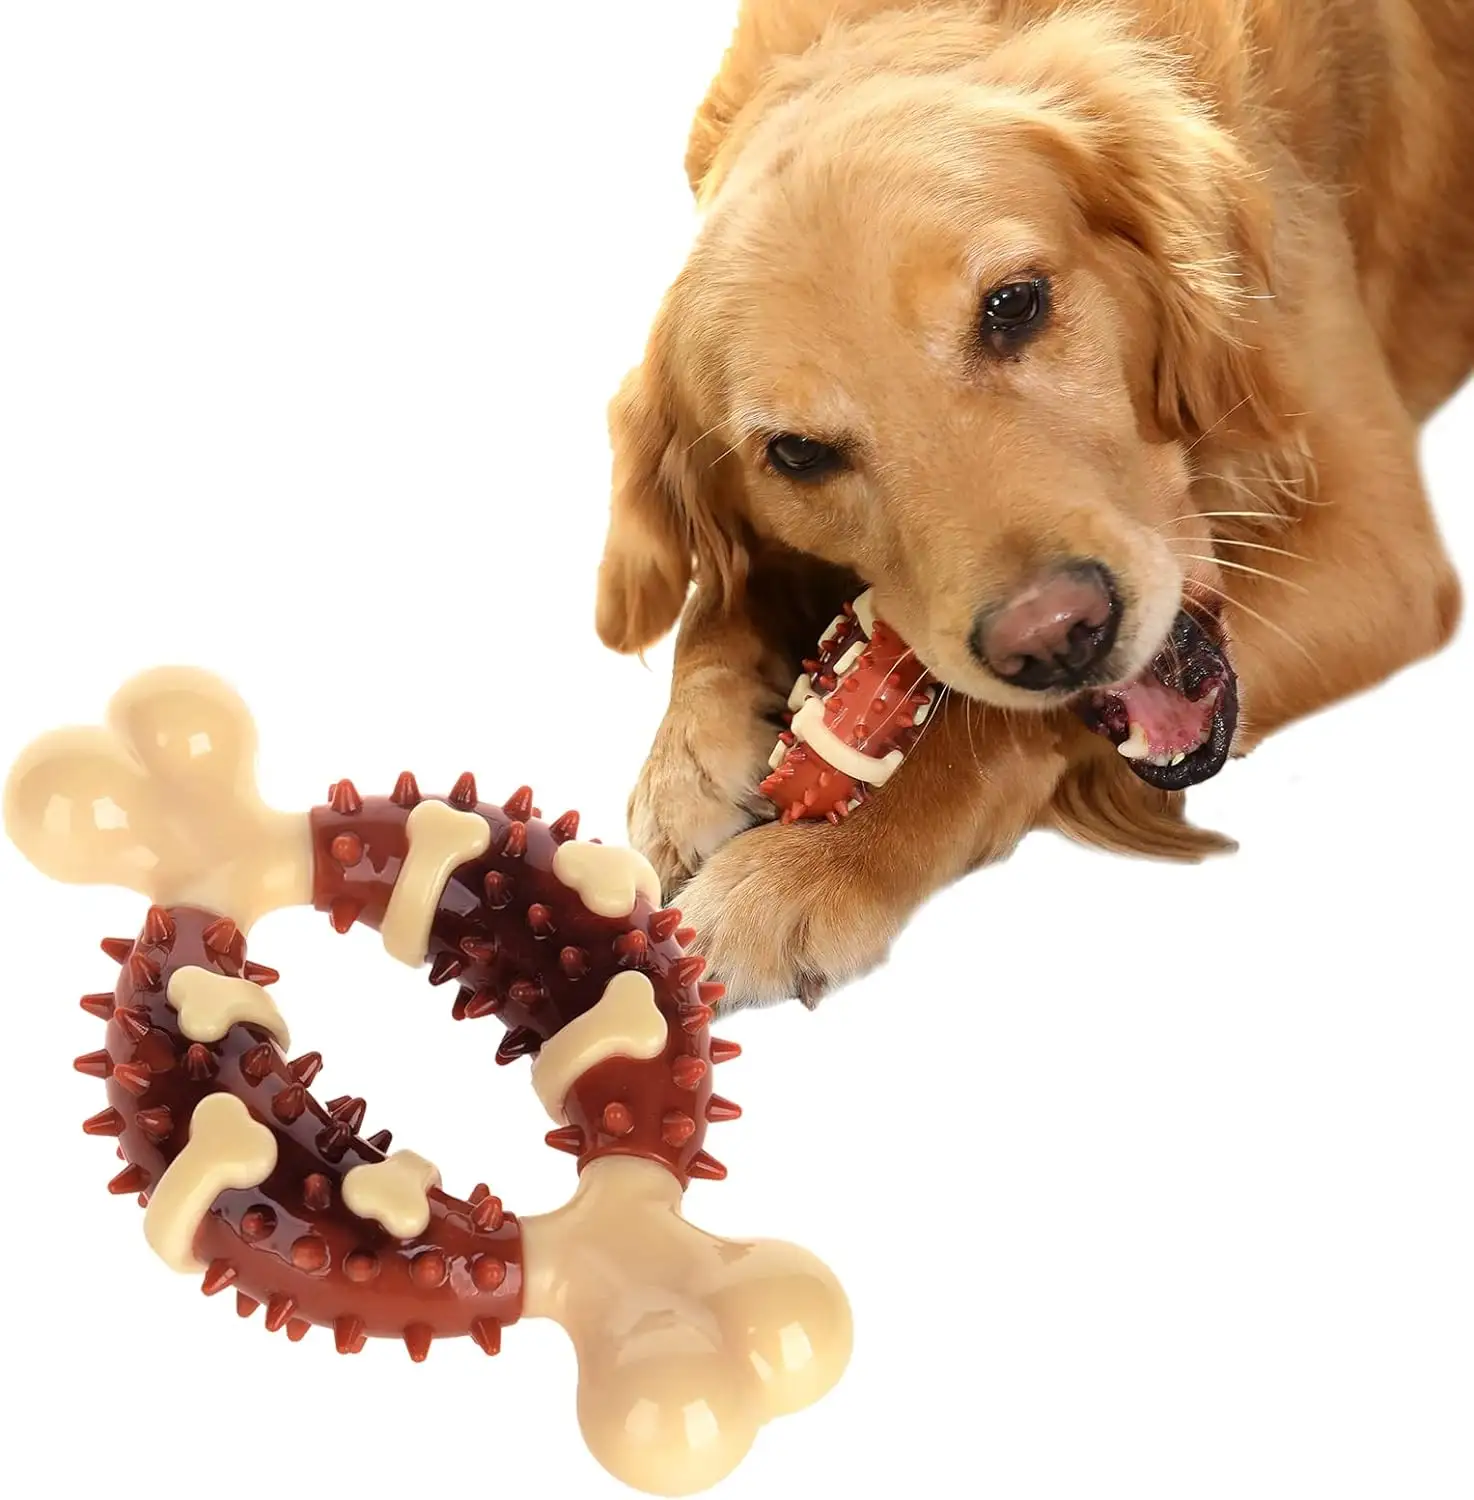 पालतू मोलर खिलौना, साफ दांत और चिंता से राहत प्यारा कुत्ता खिलौना दांत पीसने, चबाने की शक्ति बढ़ाने के लिए डिज़ाइन किया गया है